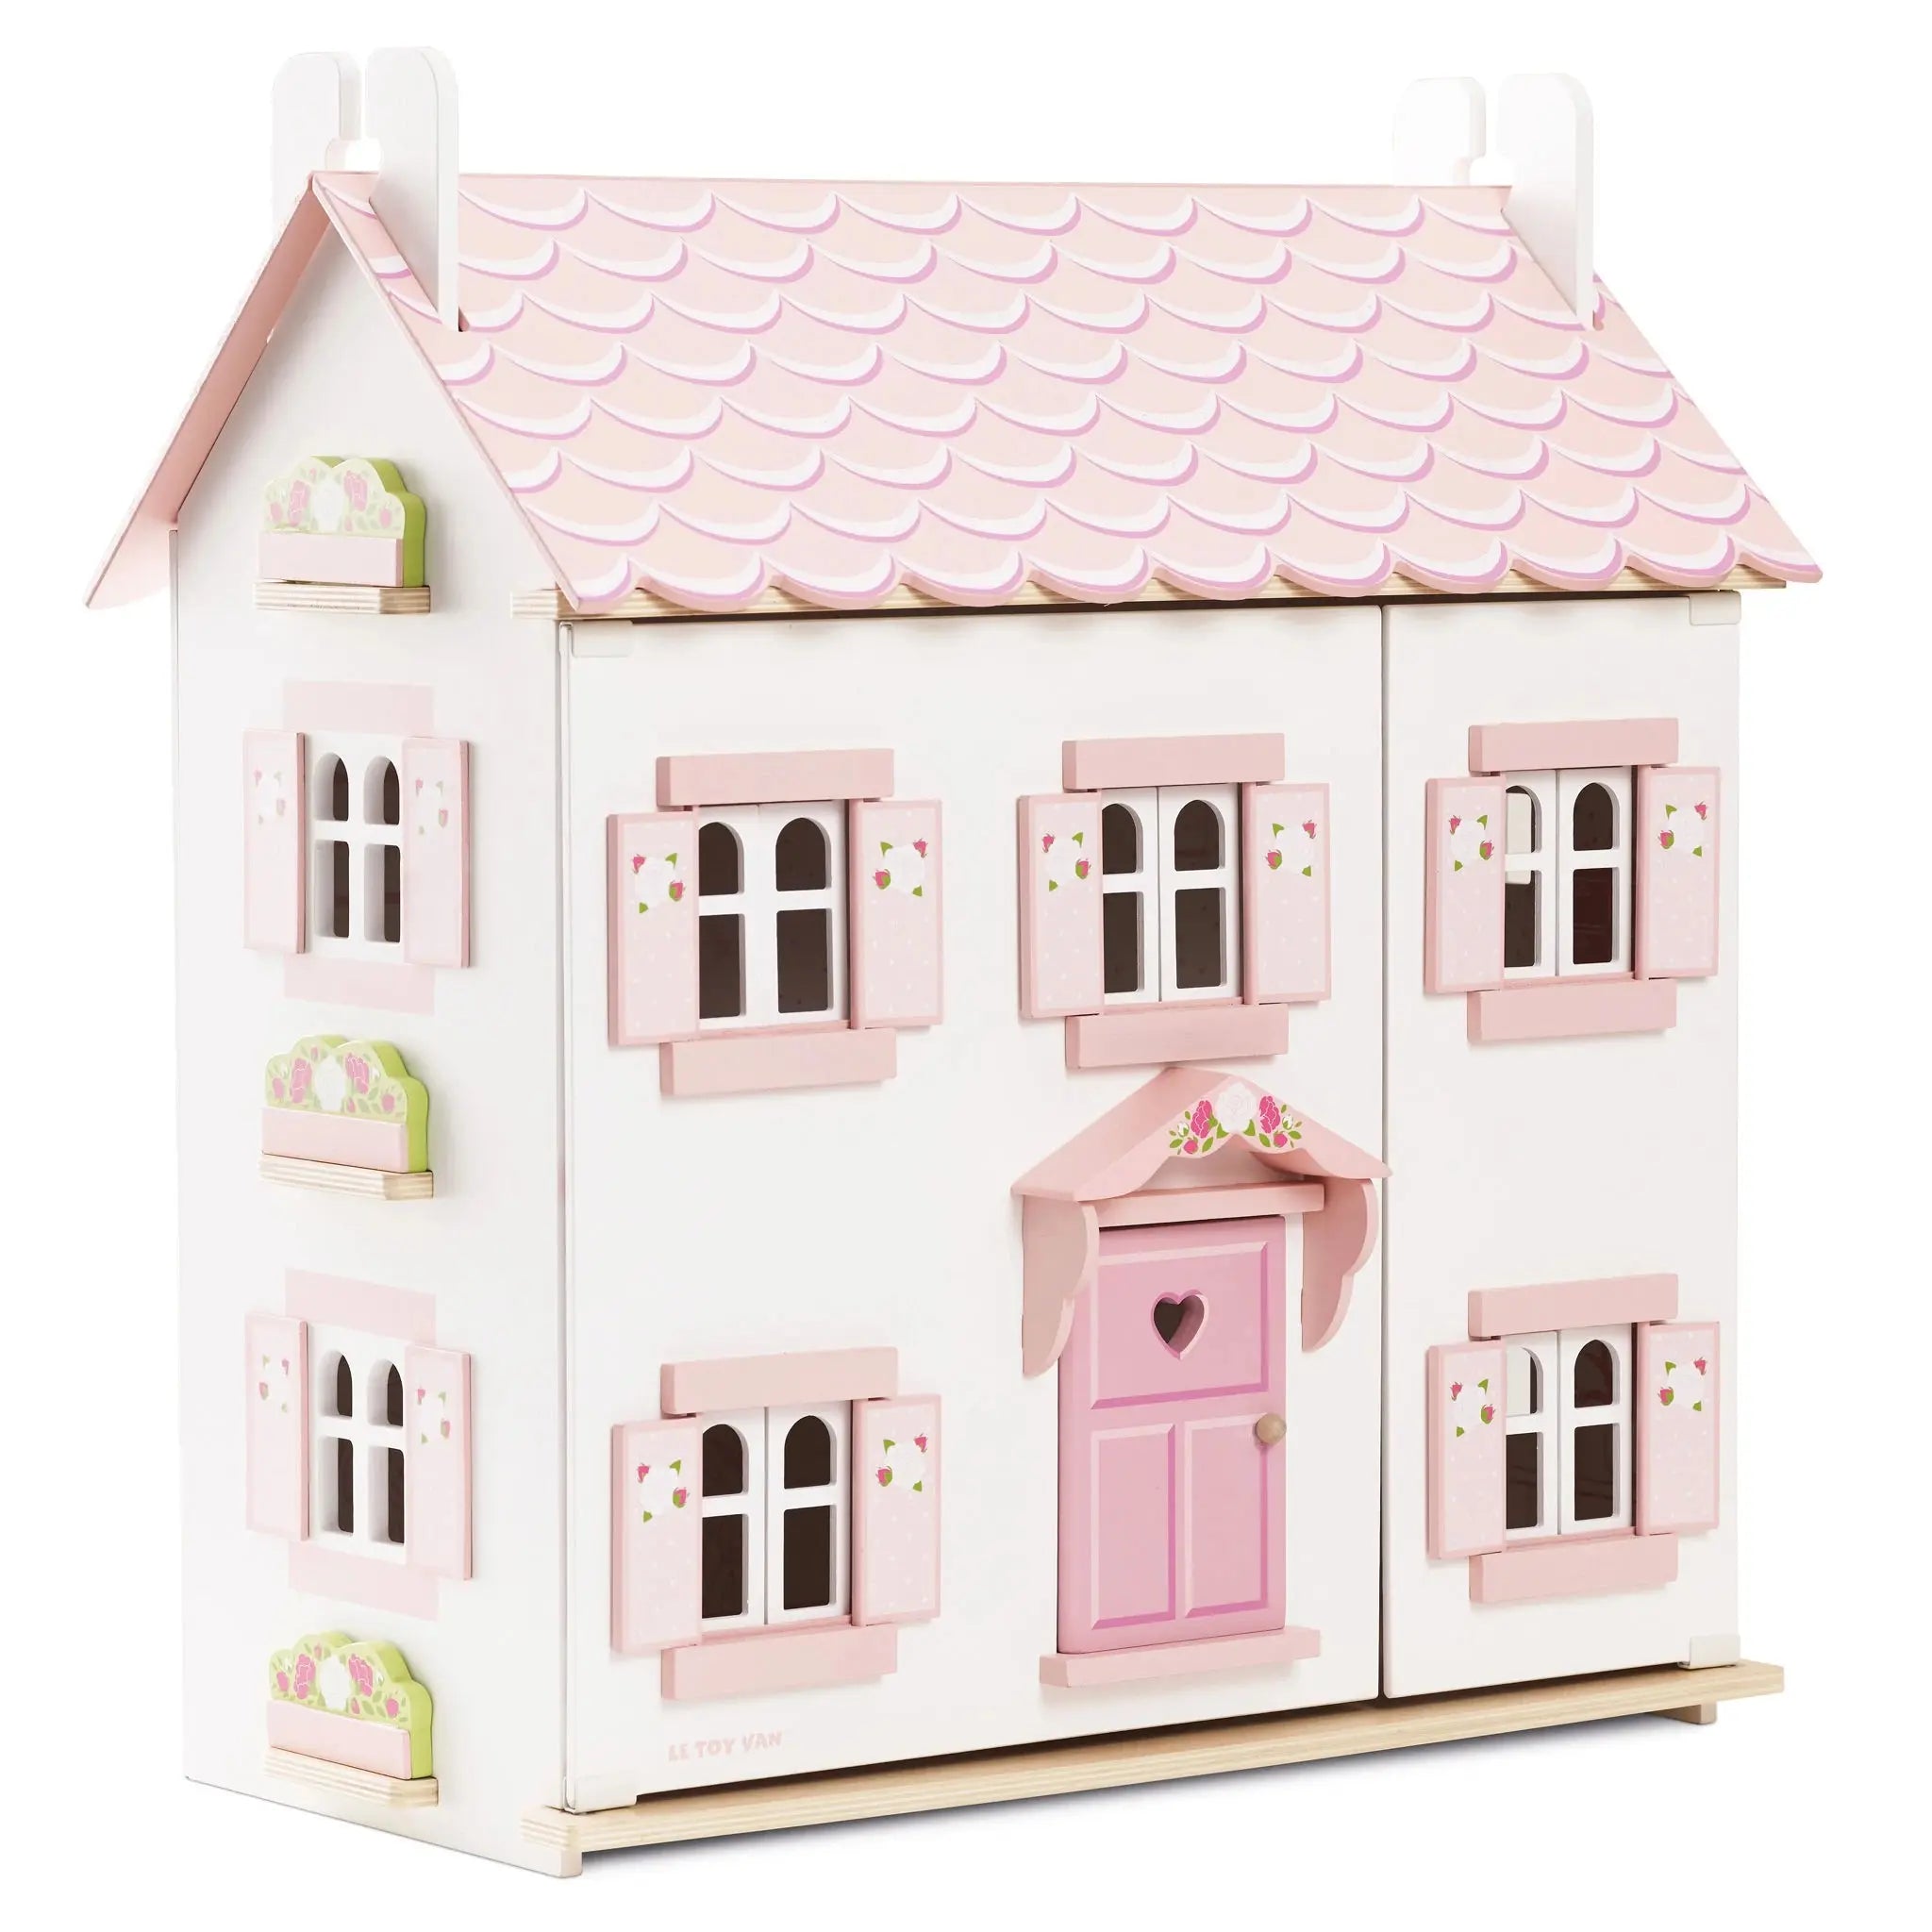 Sophie's Wooden Dolls House-Wooden toys & more-Le Toy Van-Blue Almonds-London-South Kensington